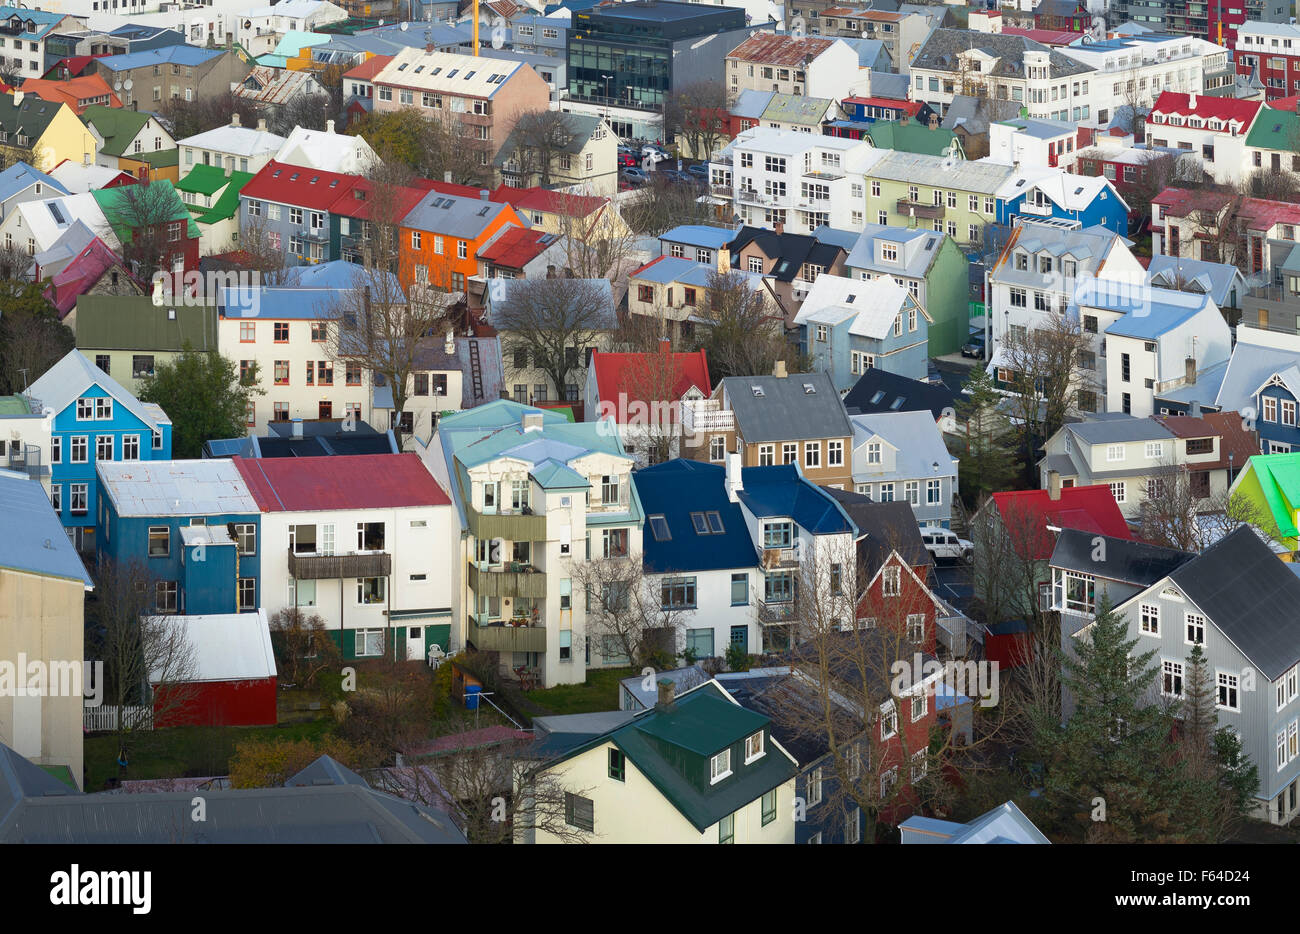 Vista aerea di Reykjavik, Islanda, preso dalla chiesa Hallgrimskikja tower, mostrando i colorati edifici della città. Foto Stock